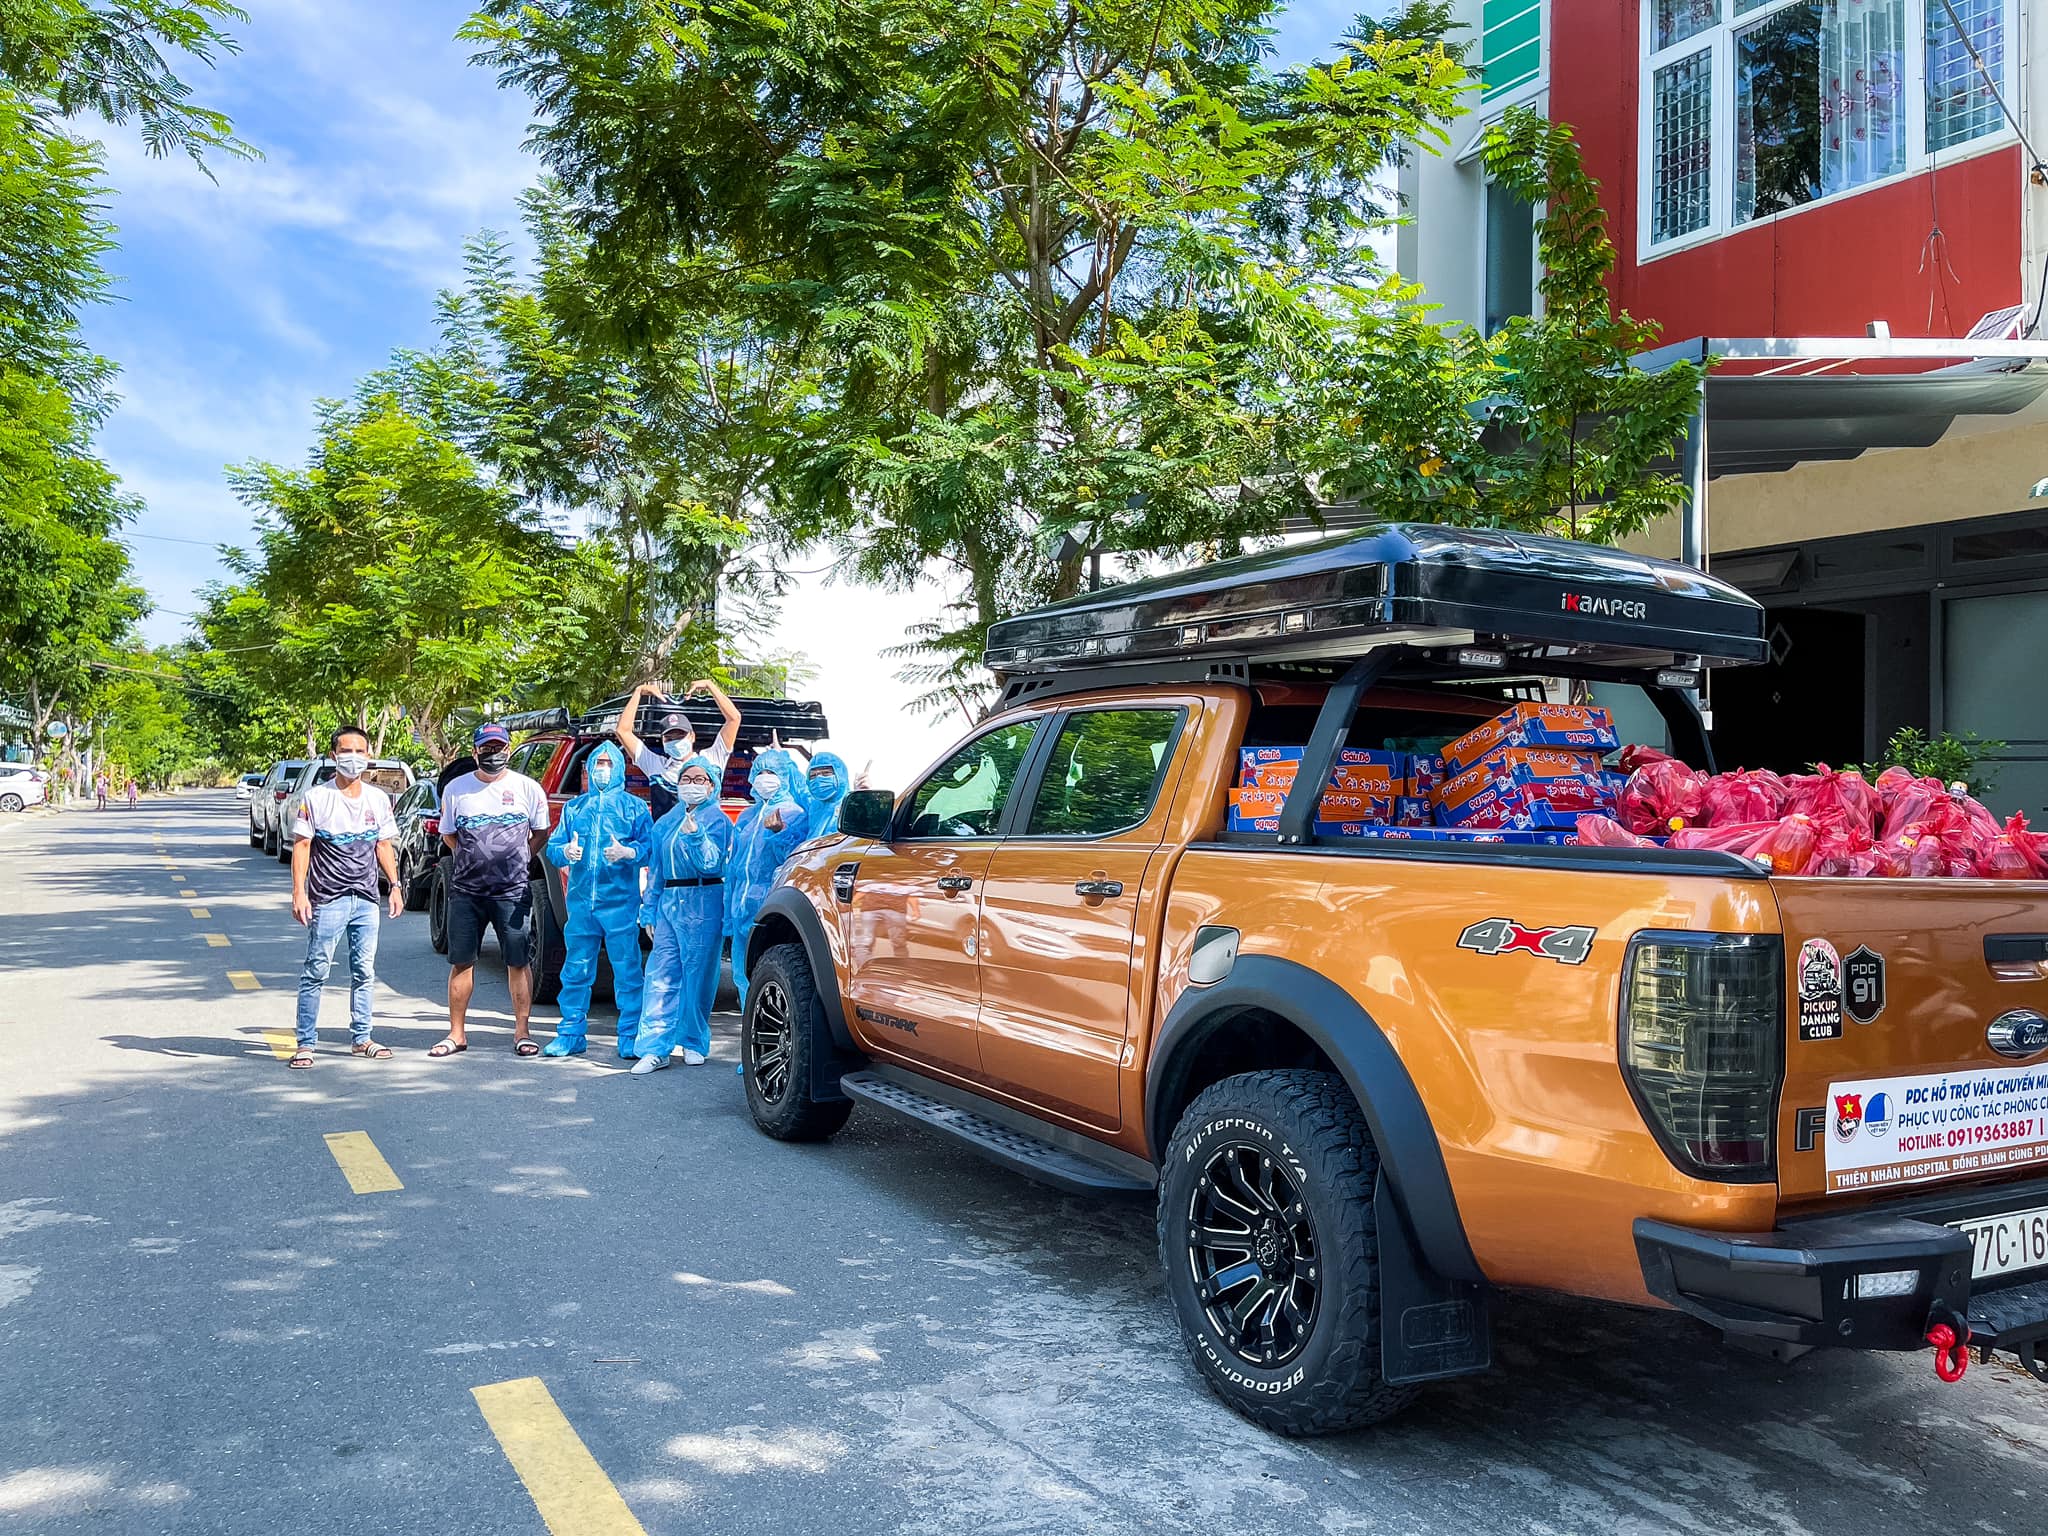 Ford Việt Nam Khởi Động Tháng Chăm Sóc Toàn Cầu, Kết Nối Sức Mạnh Cùng Cộng Đồng Bán Tải Ba Miền